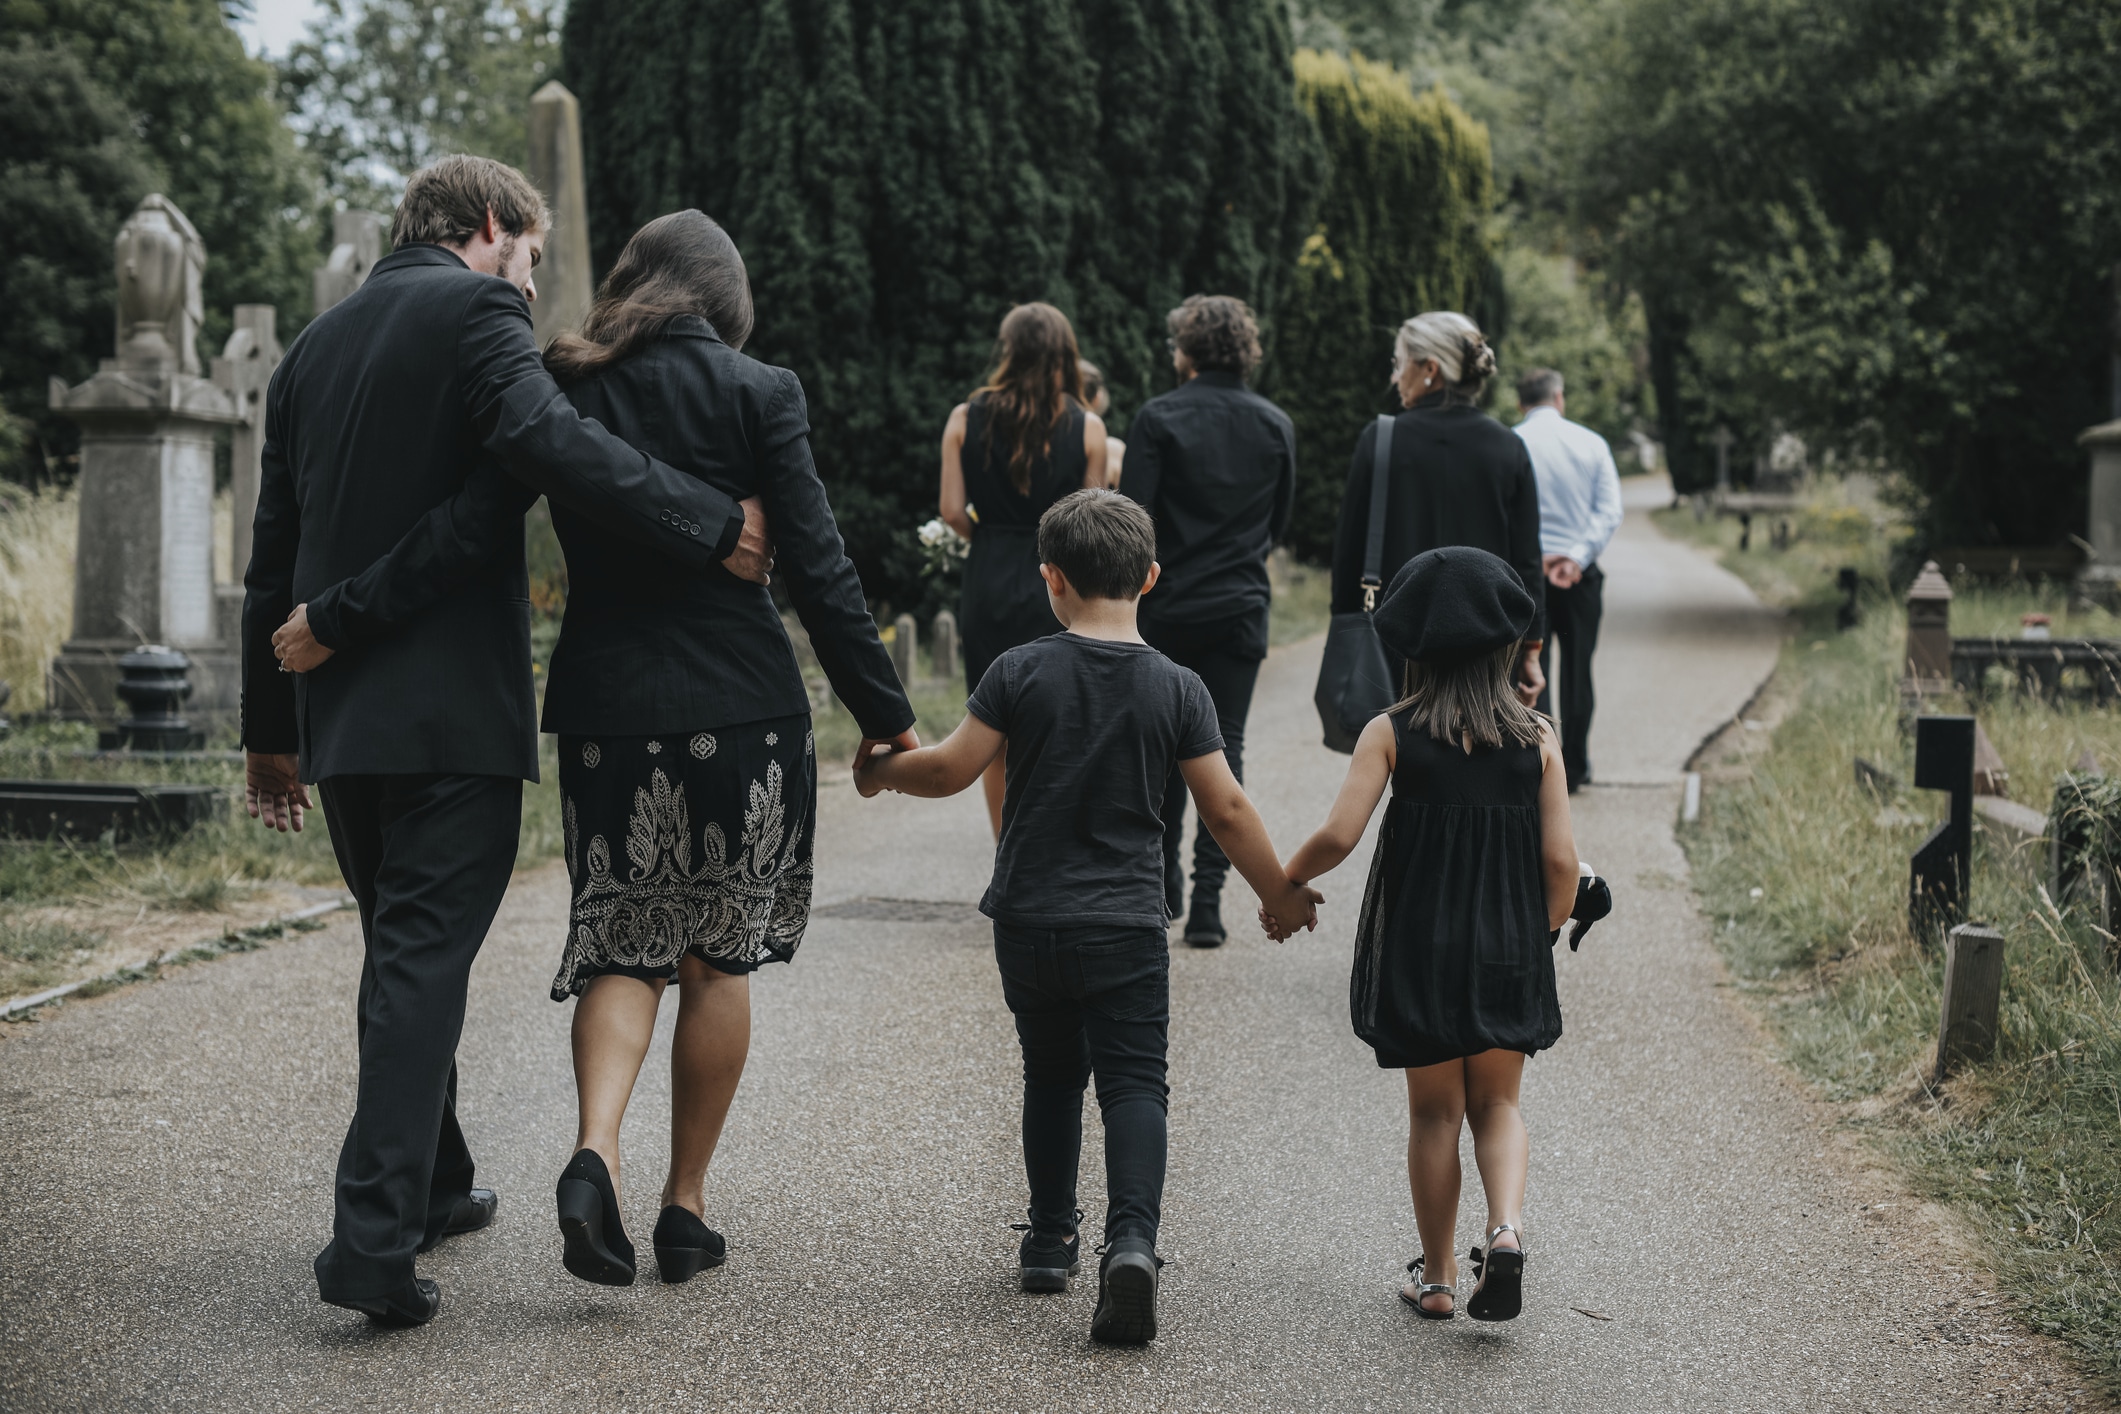 Blog 3 children - Should Children Attend Funerals?